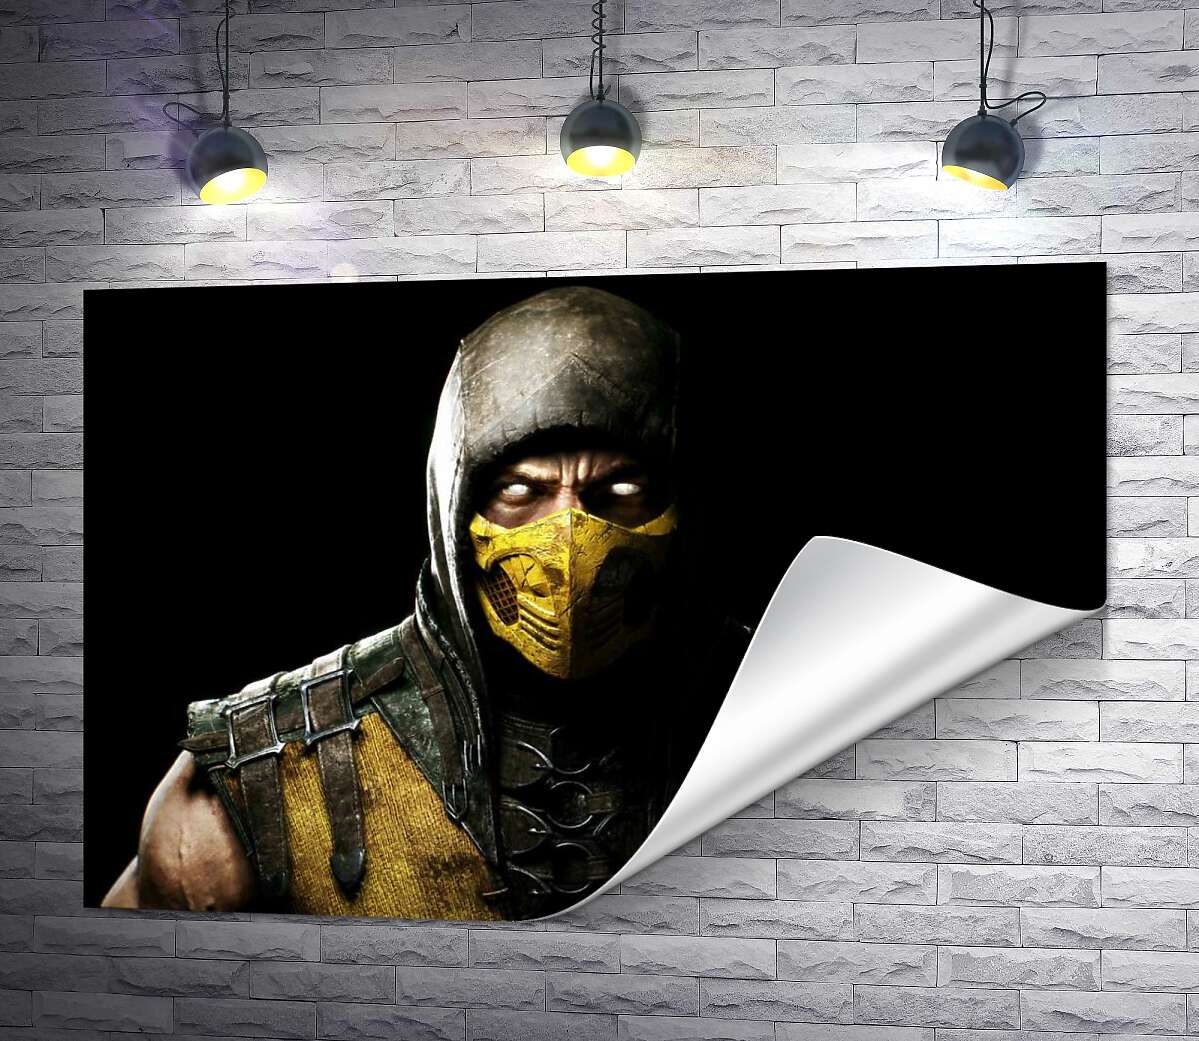 друк З пітьми до світла: портрет героя гри "Mortal Kombat" Скорпіона